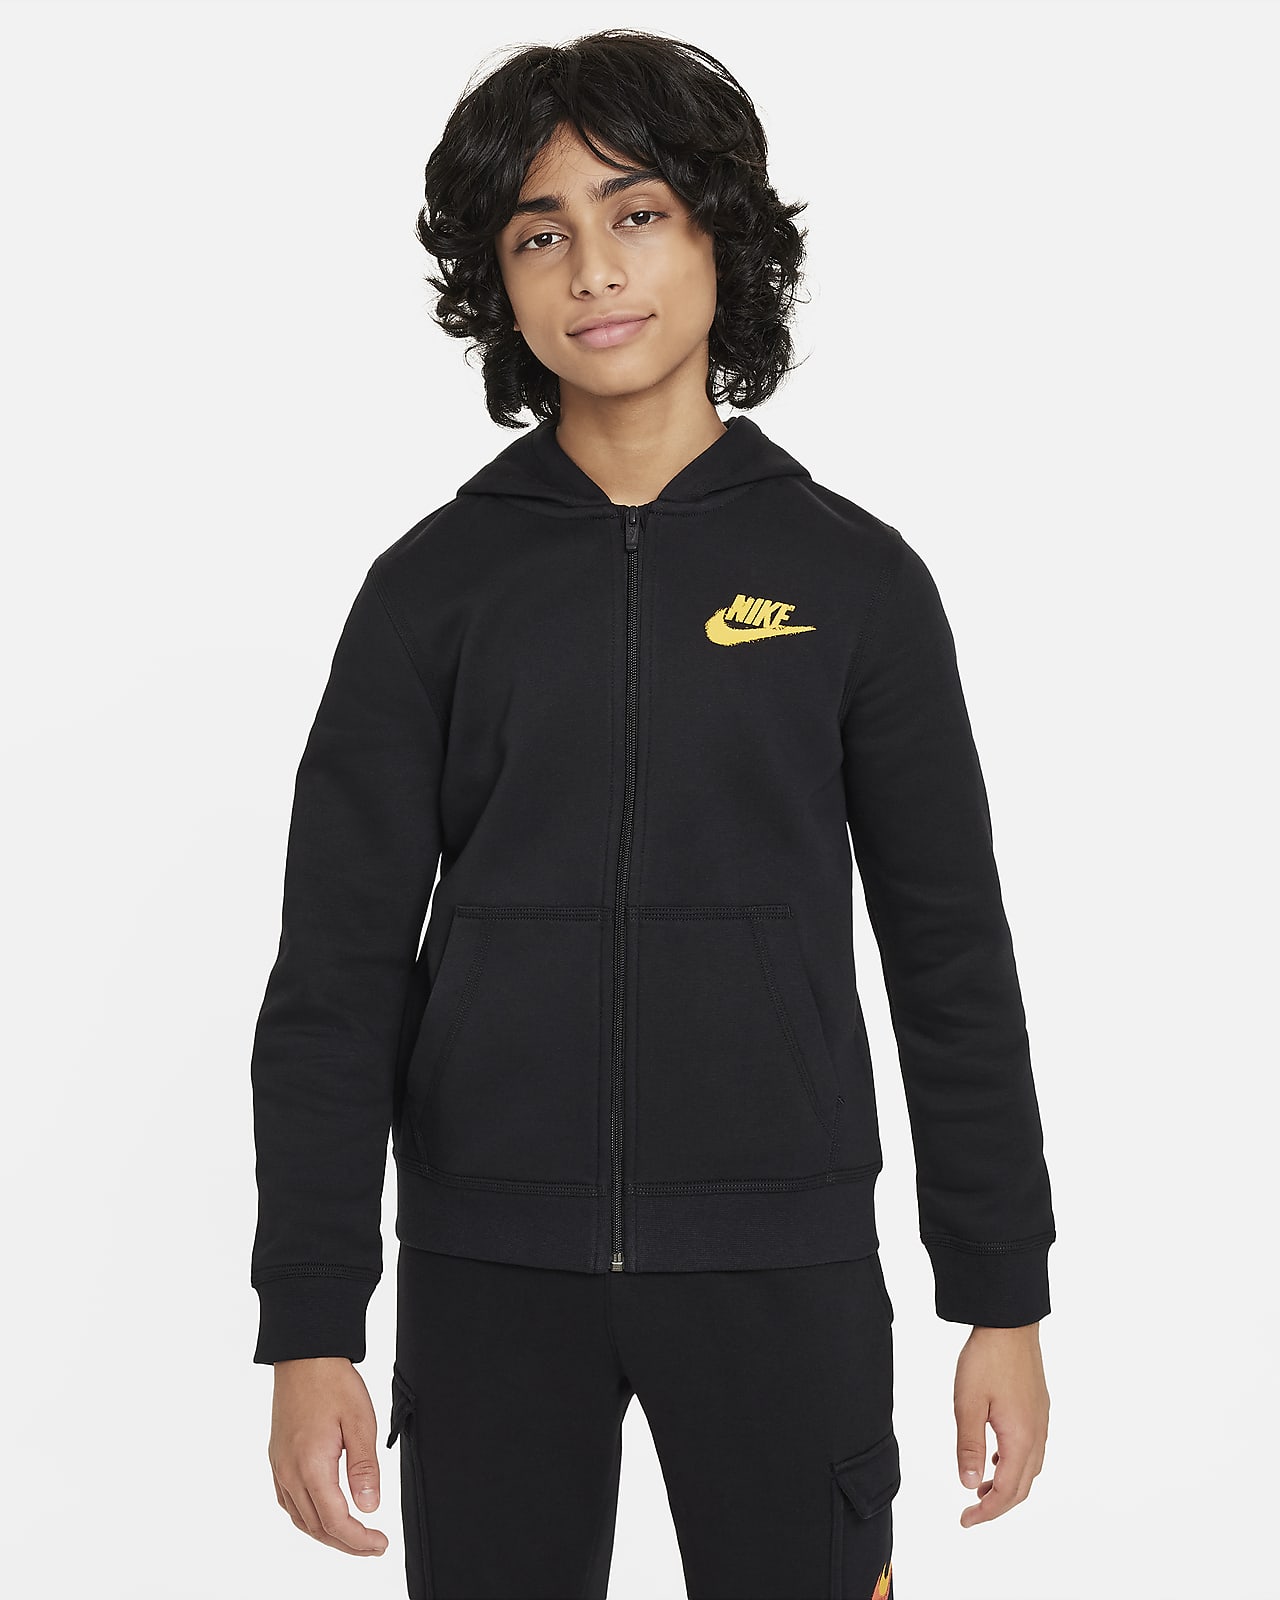 Φλις μπλούζα με κουκούλα, φερμουάρ σε όλο το μήκος και σχέδιο Nike Sportswear για μεγάλα αγόρια